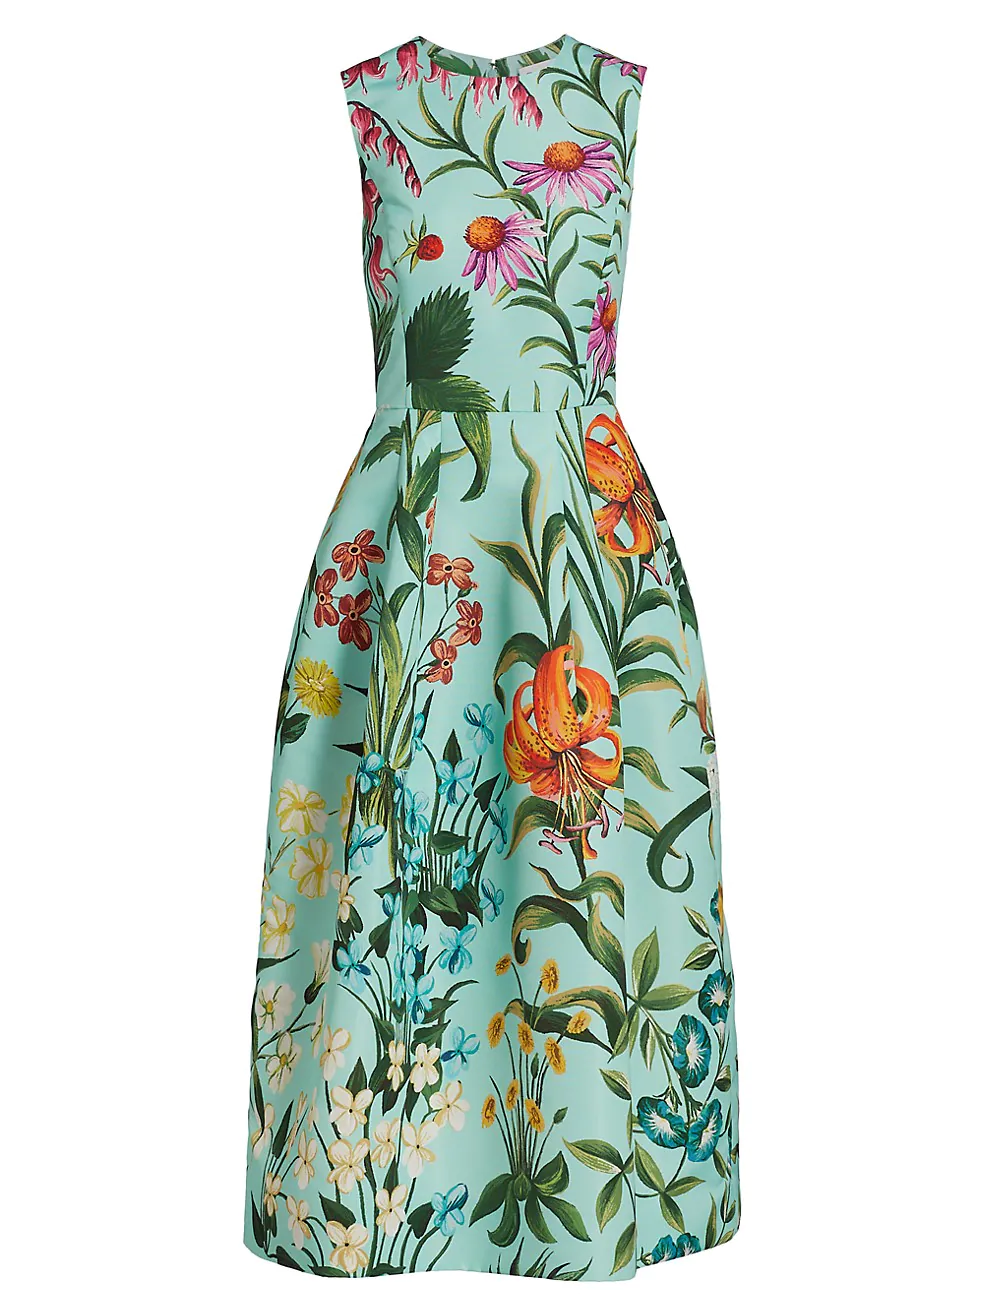 Floral Tapestry Sleeveless Faille Dress- saks fifth avenue - Flowered dress - flower dress - summer dress - glorious dress